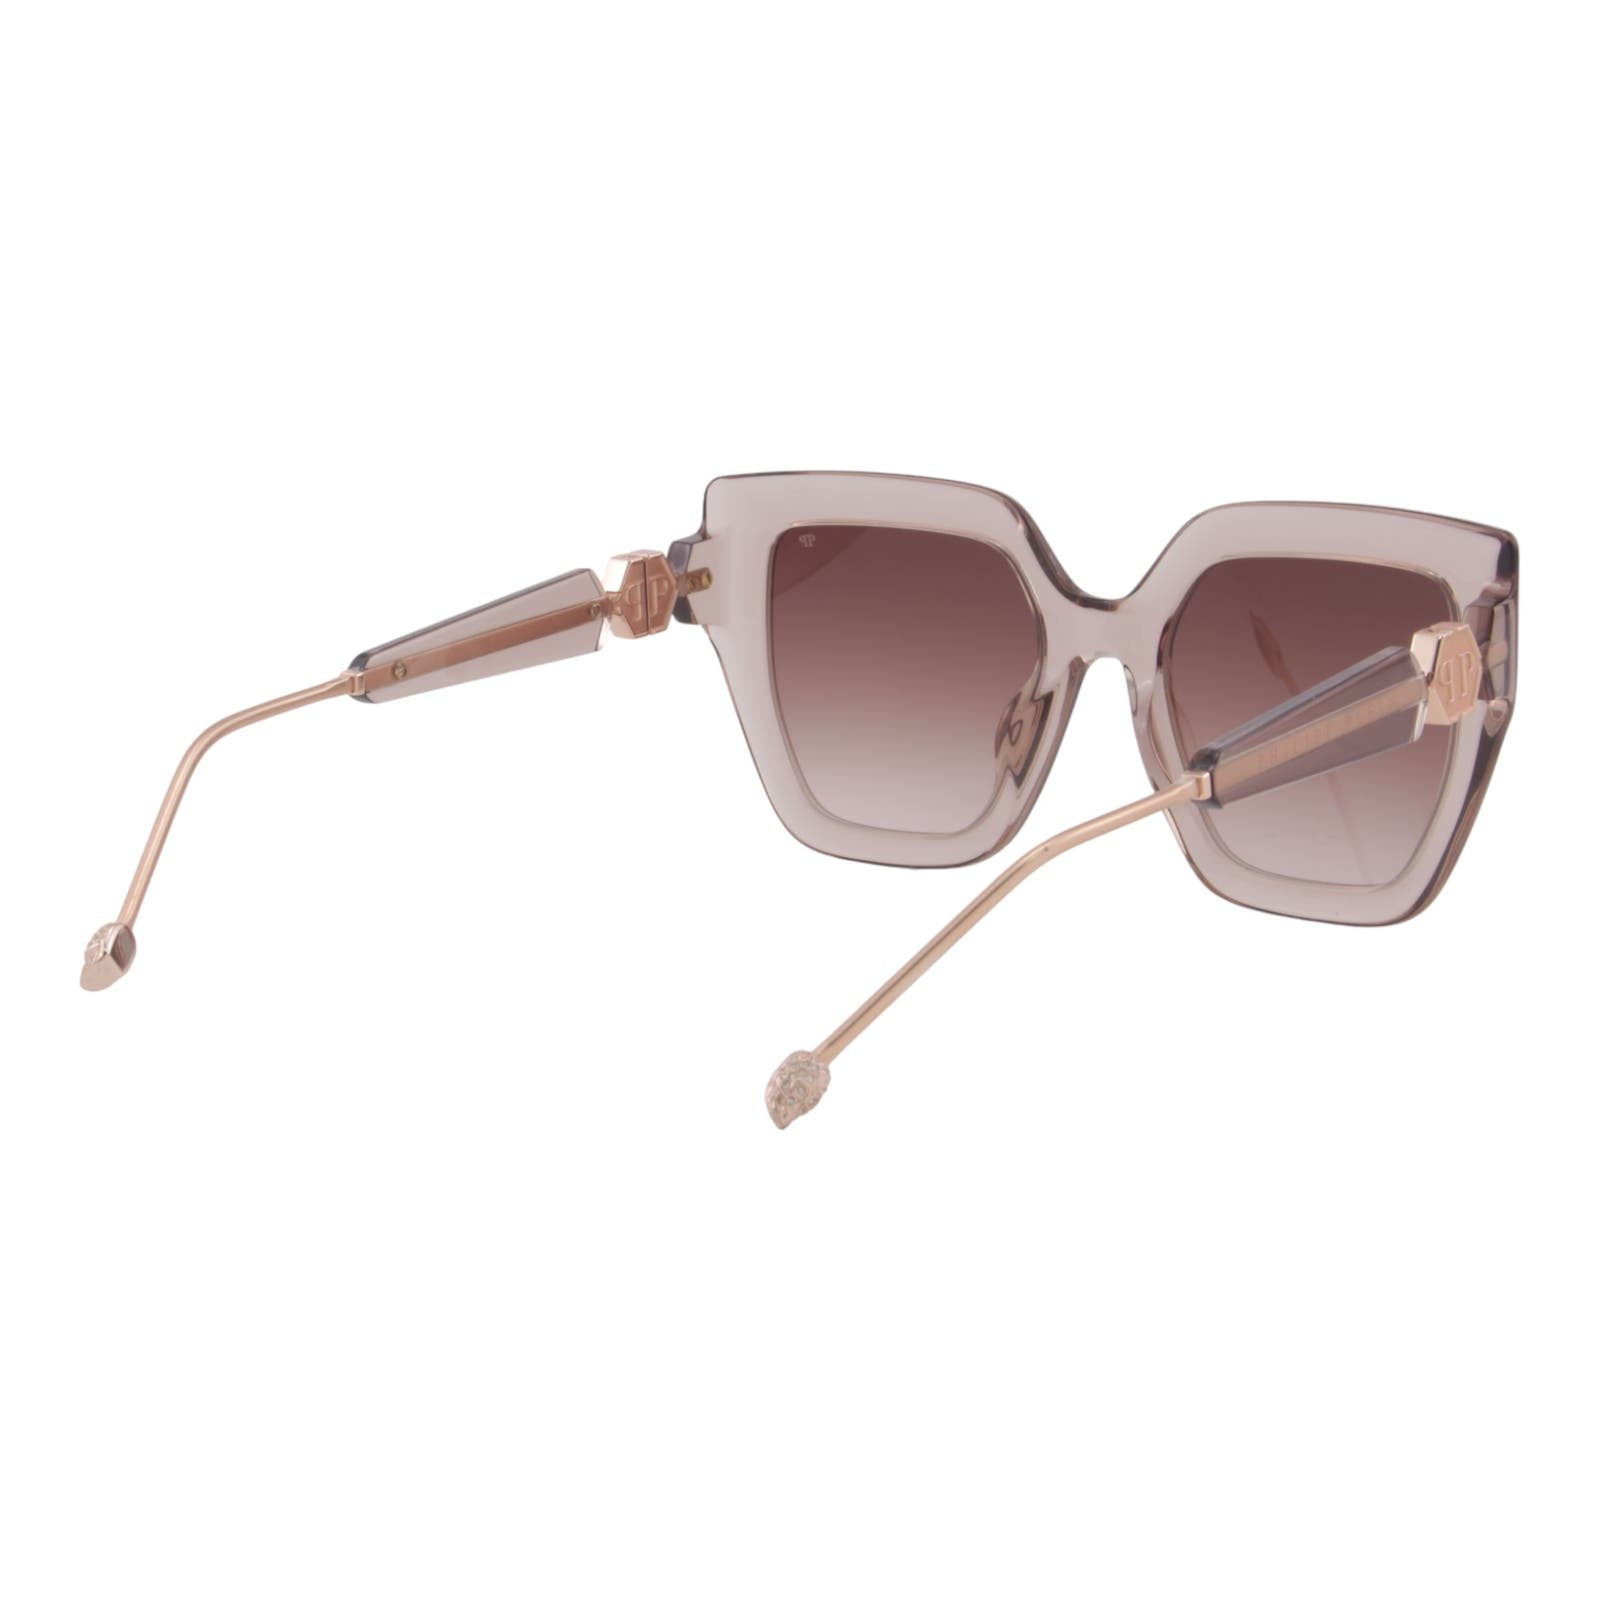 Women Cat-Eye Transparent Sunglasses SPP064S-07T1 Oversized Rose Gold & Beige Frame